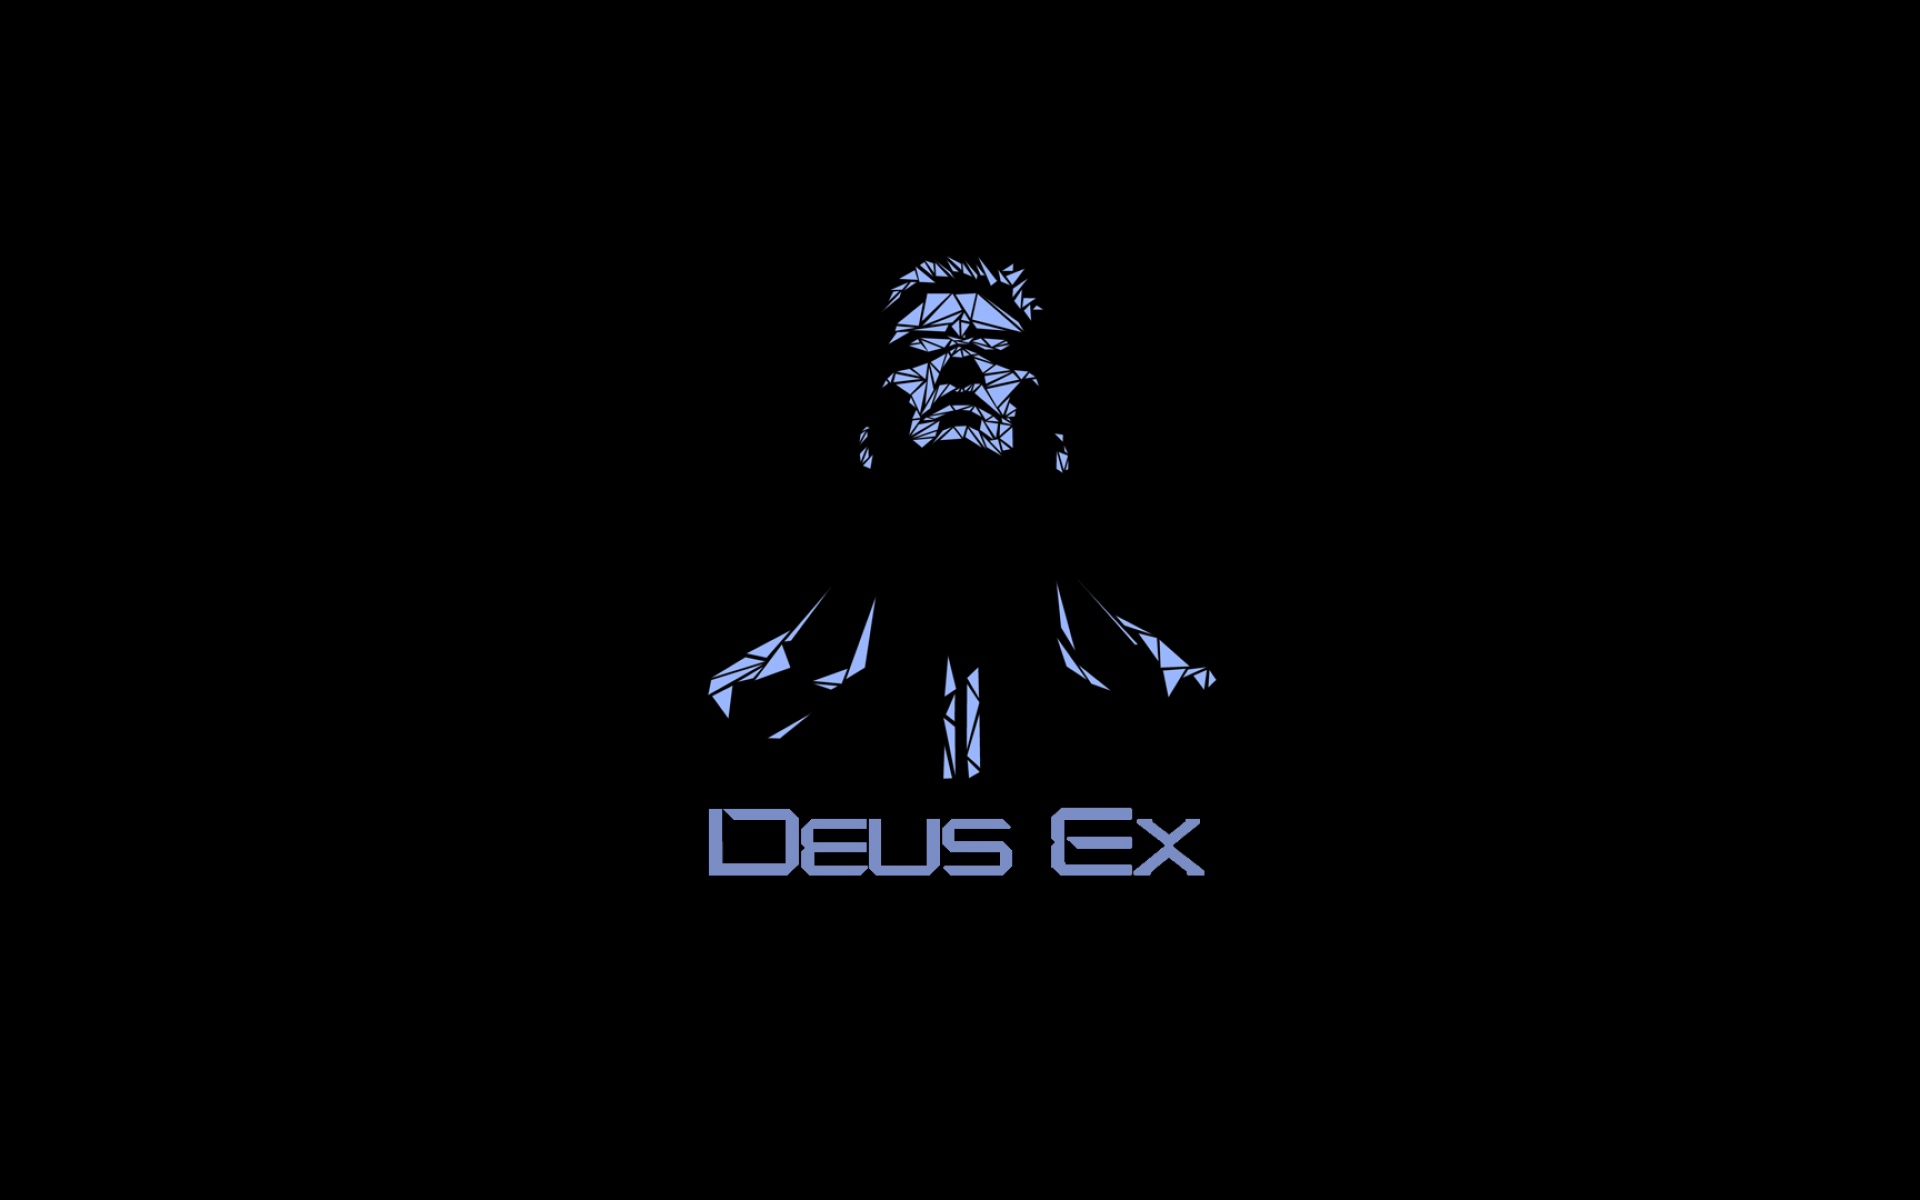 Картинки Deus ex, лицо, взгляд, имя фото и обои на рабочий стол